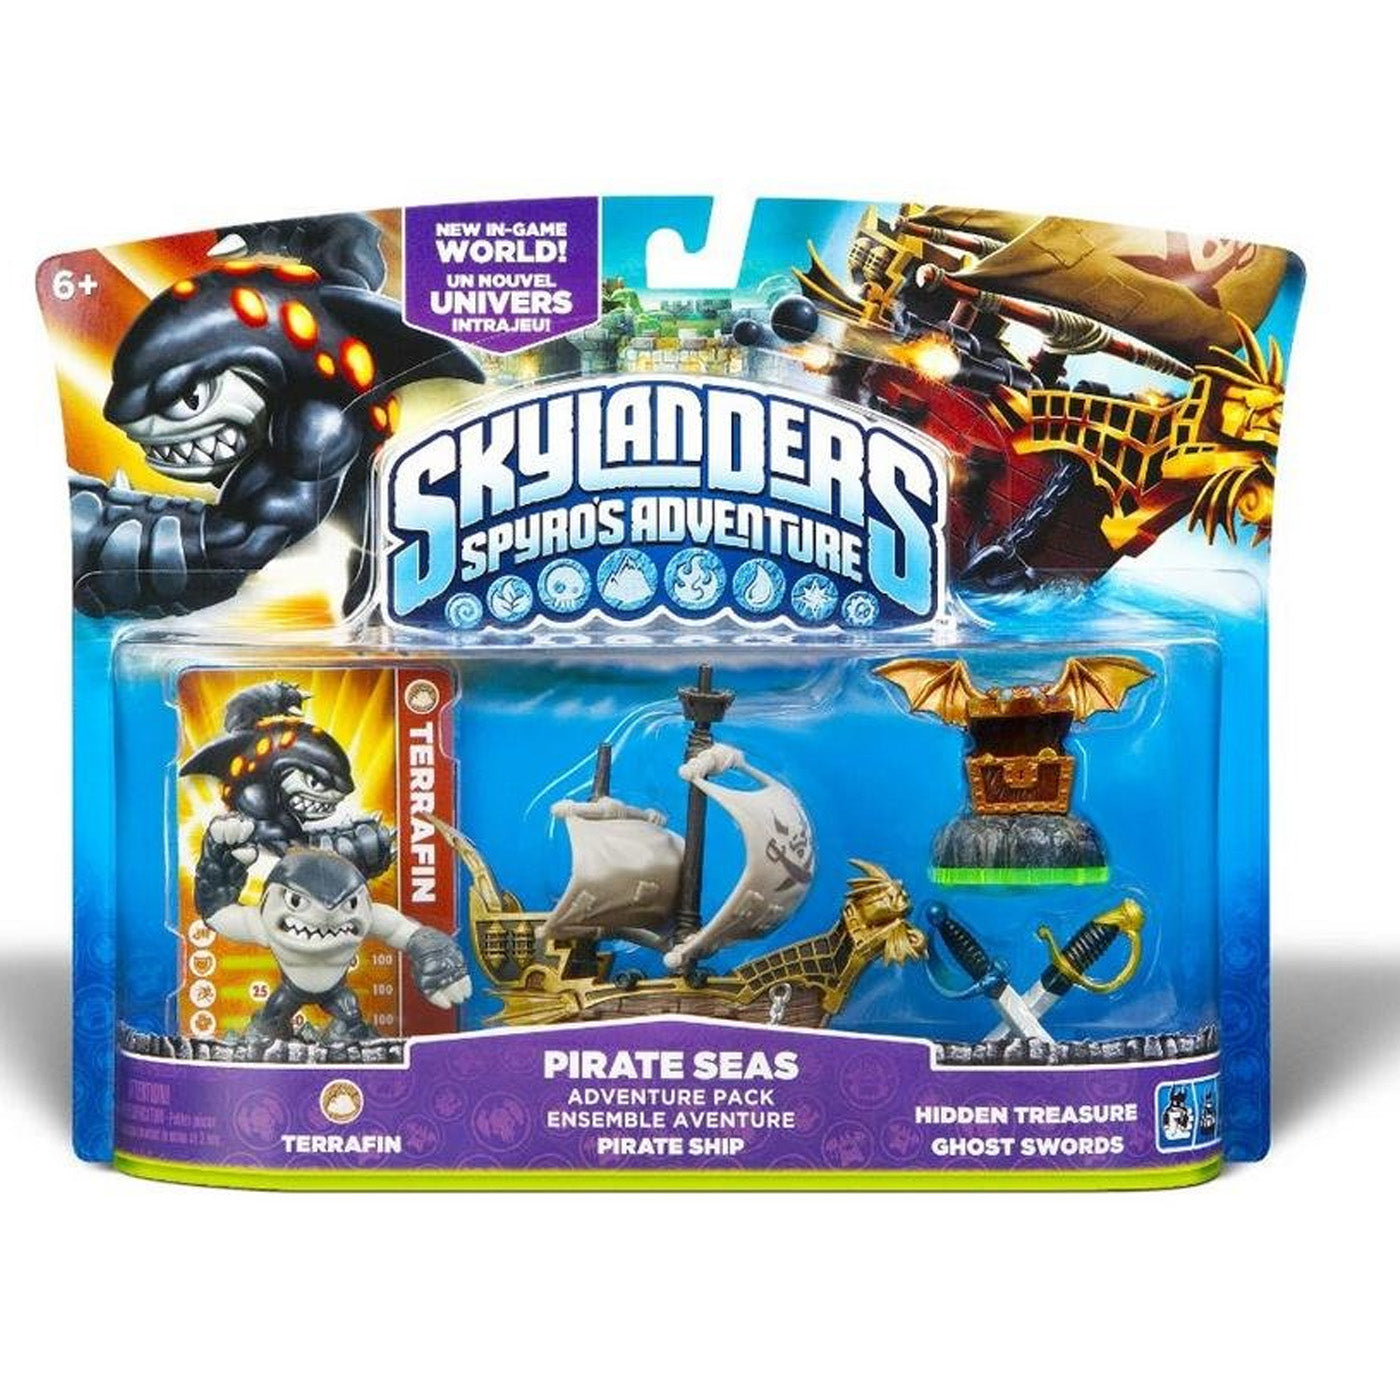 Skylanders Spyro's Adventure Pack: Pirate Seas